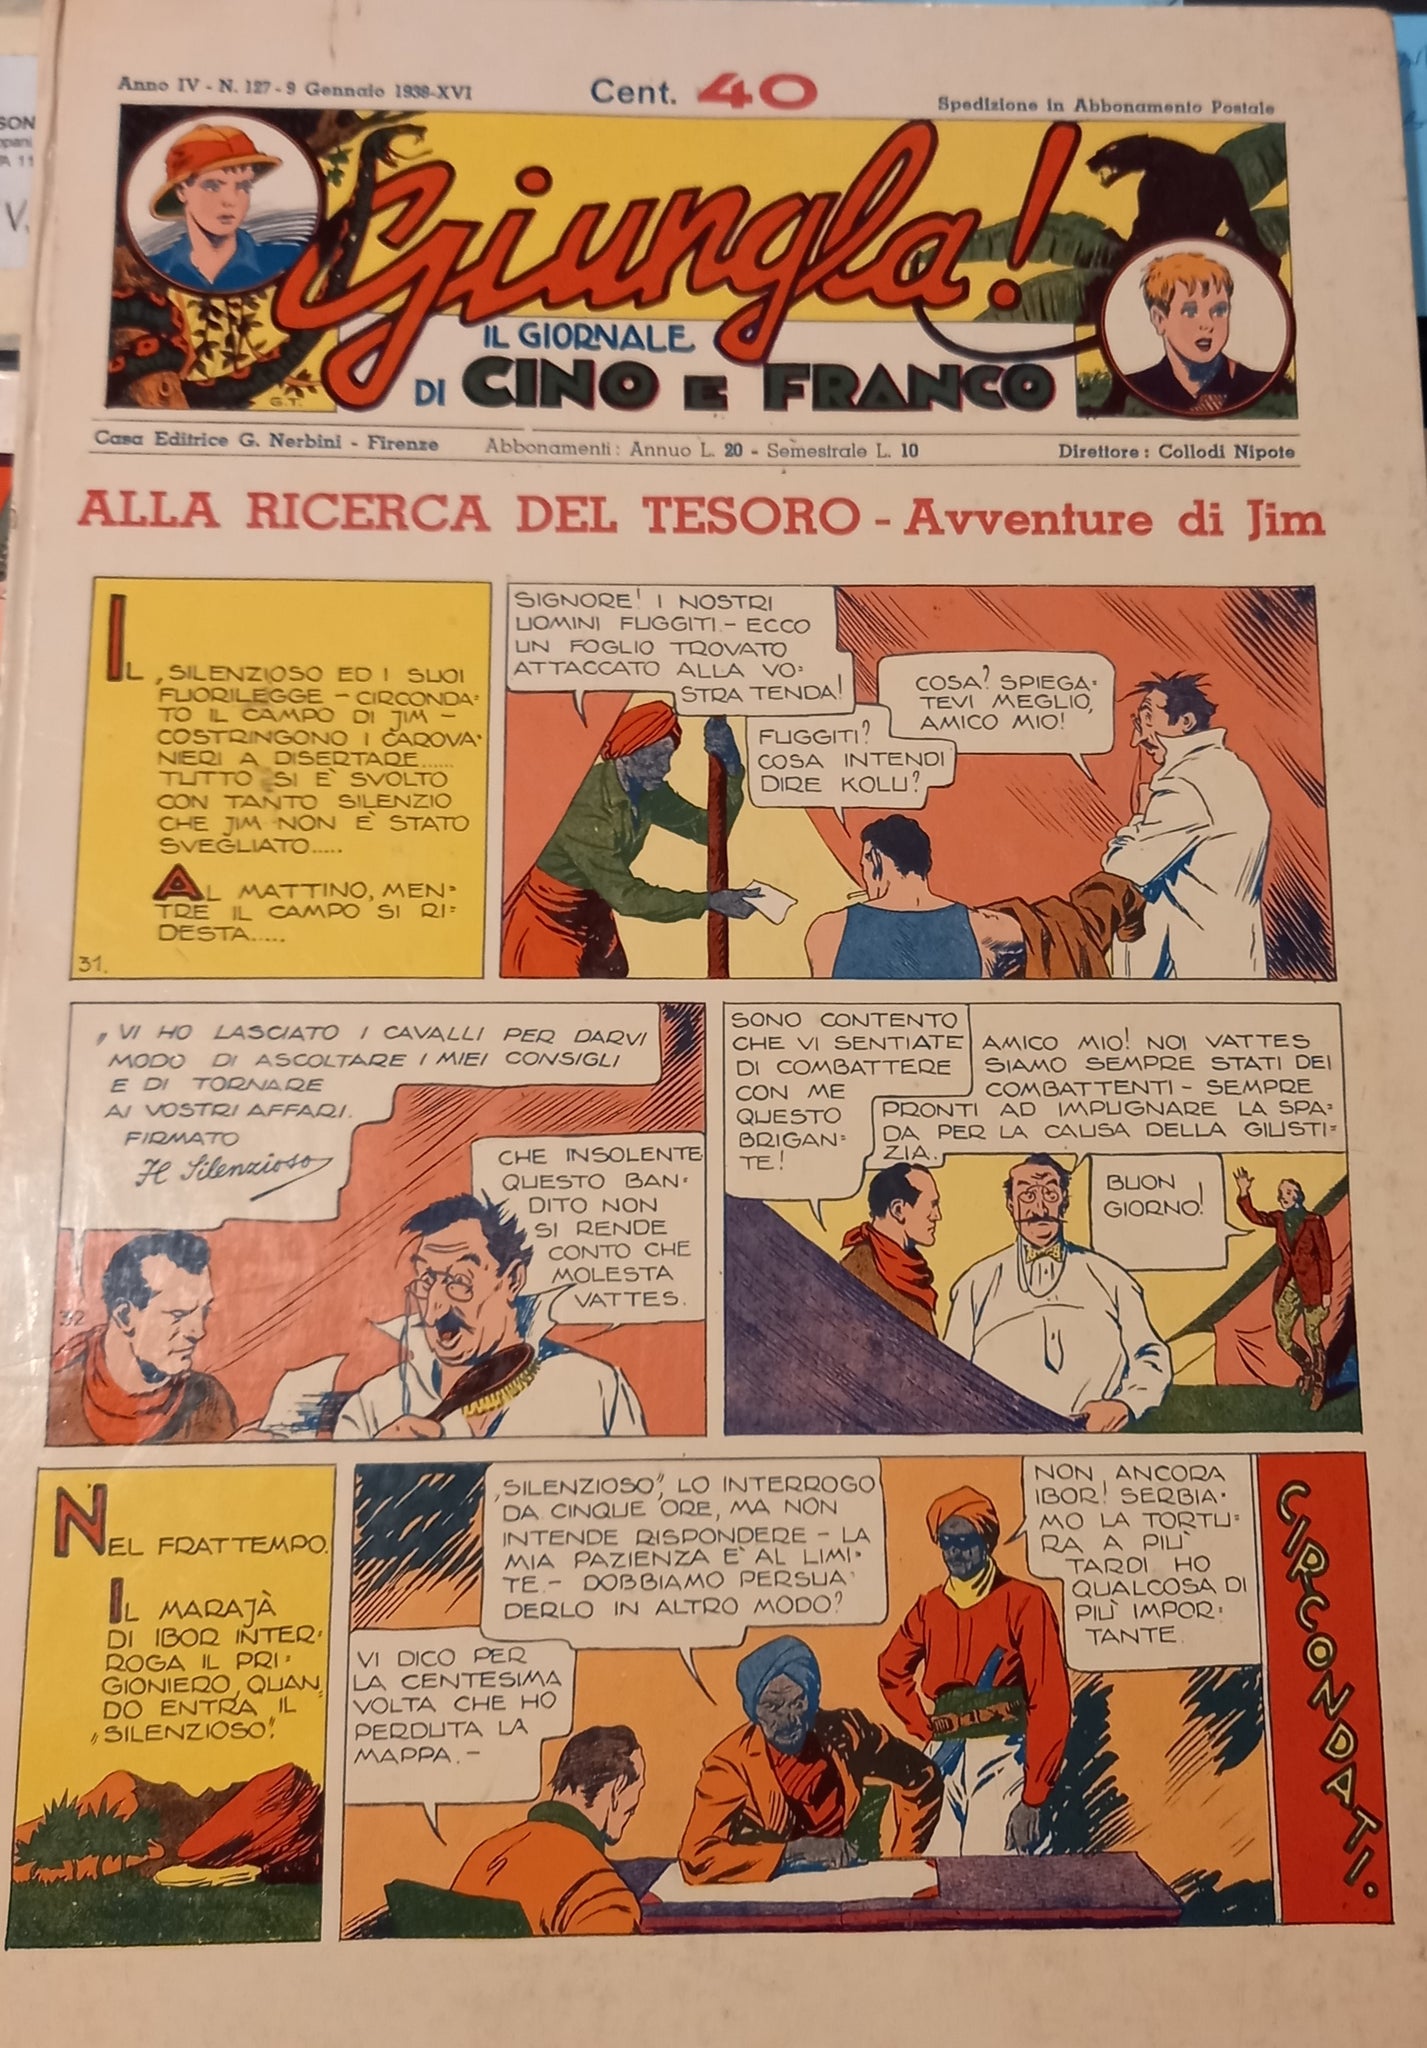 Giungla! Il giornale di Cino e Franco. Alla ricerce del tesoro.